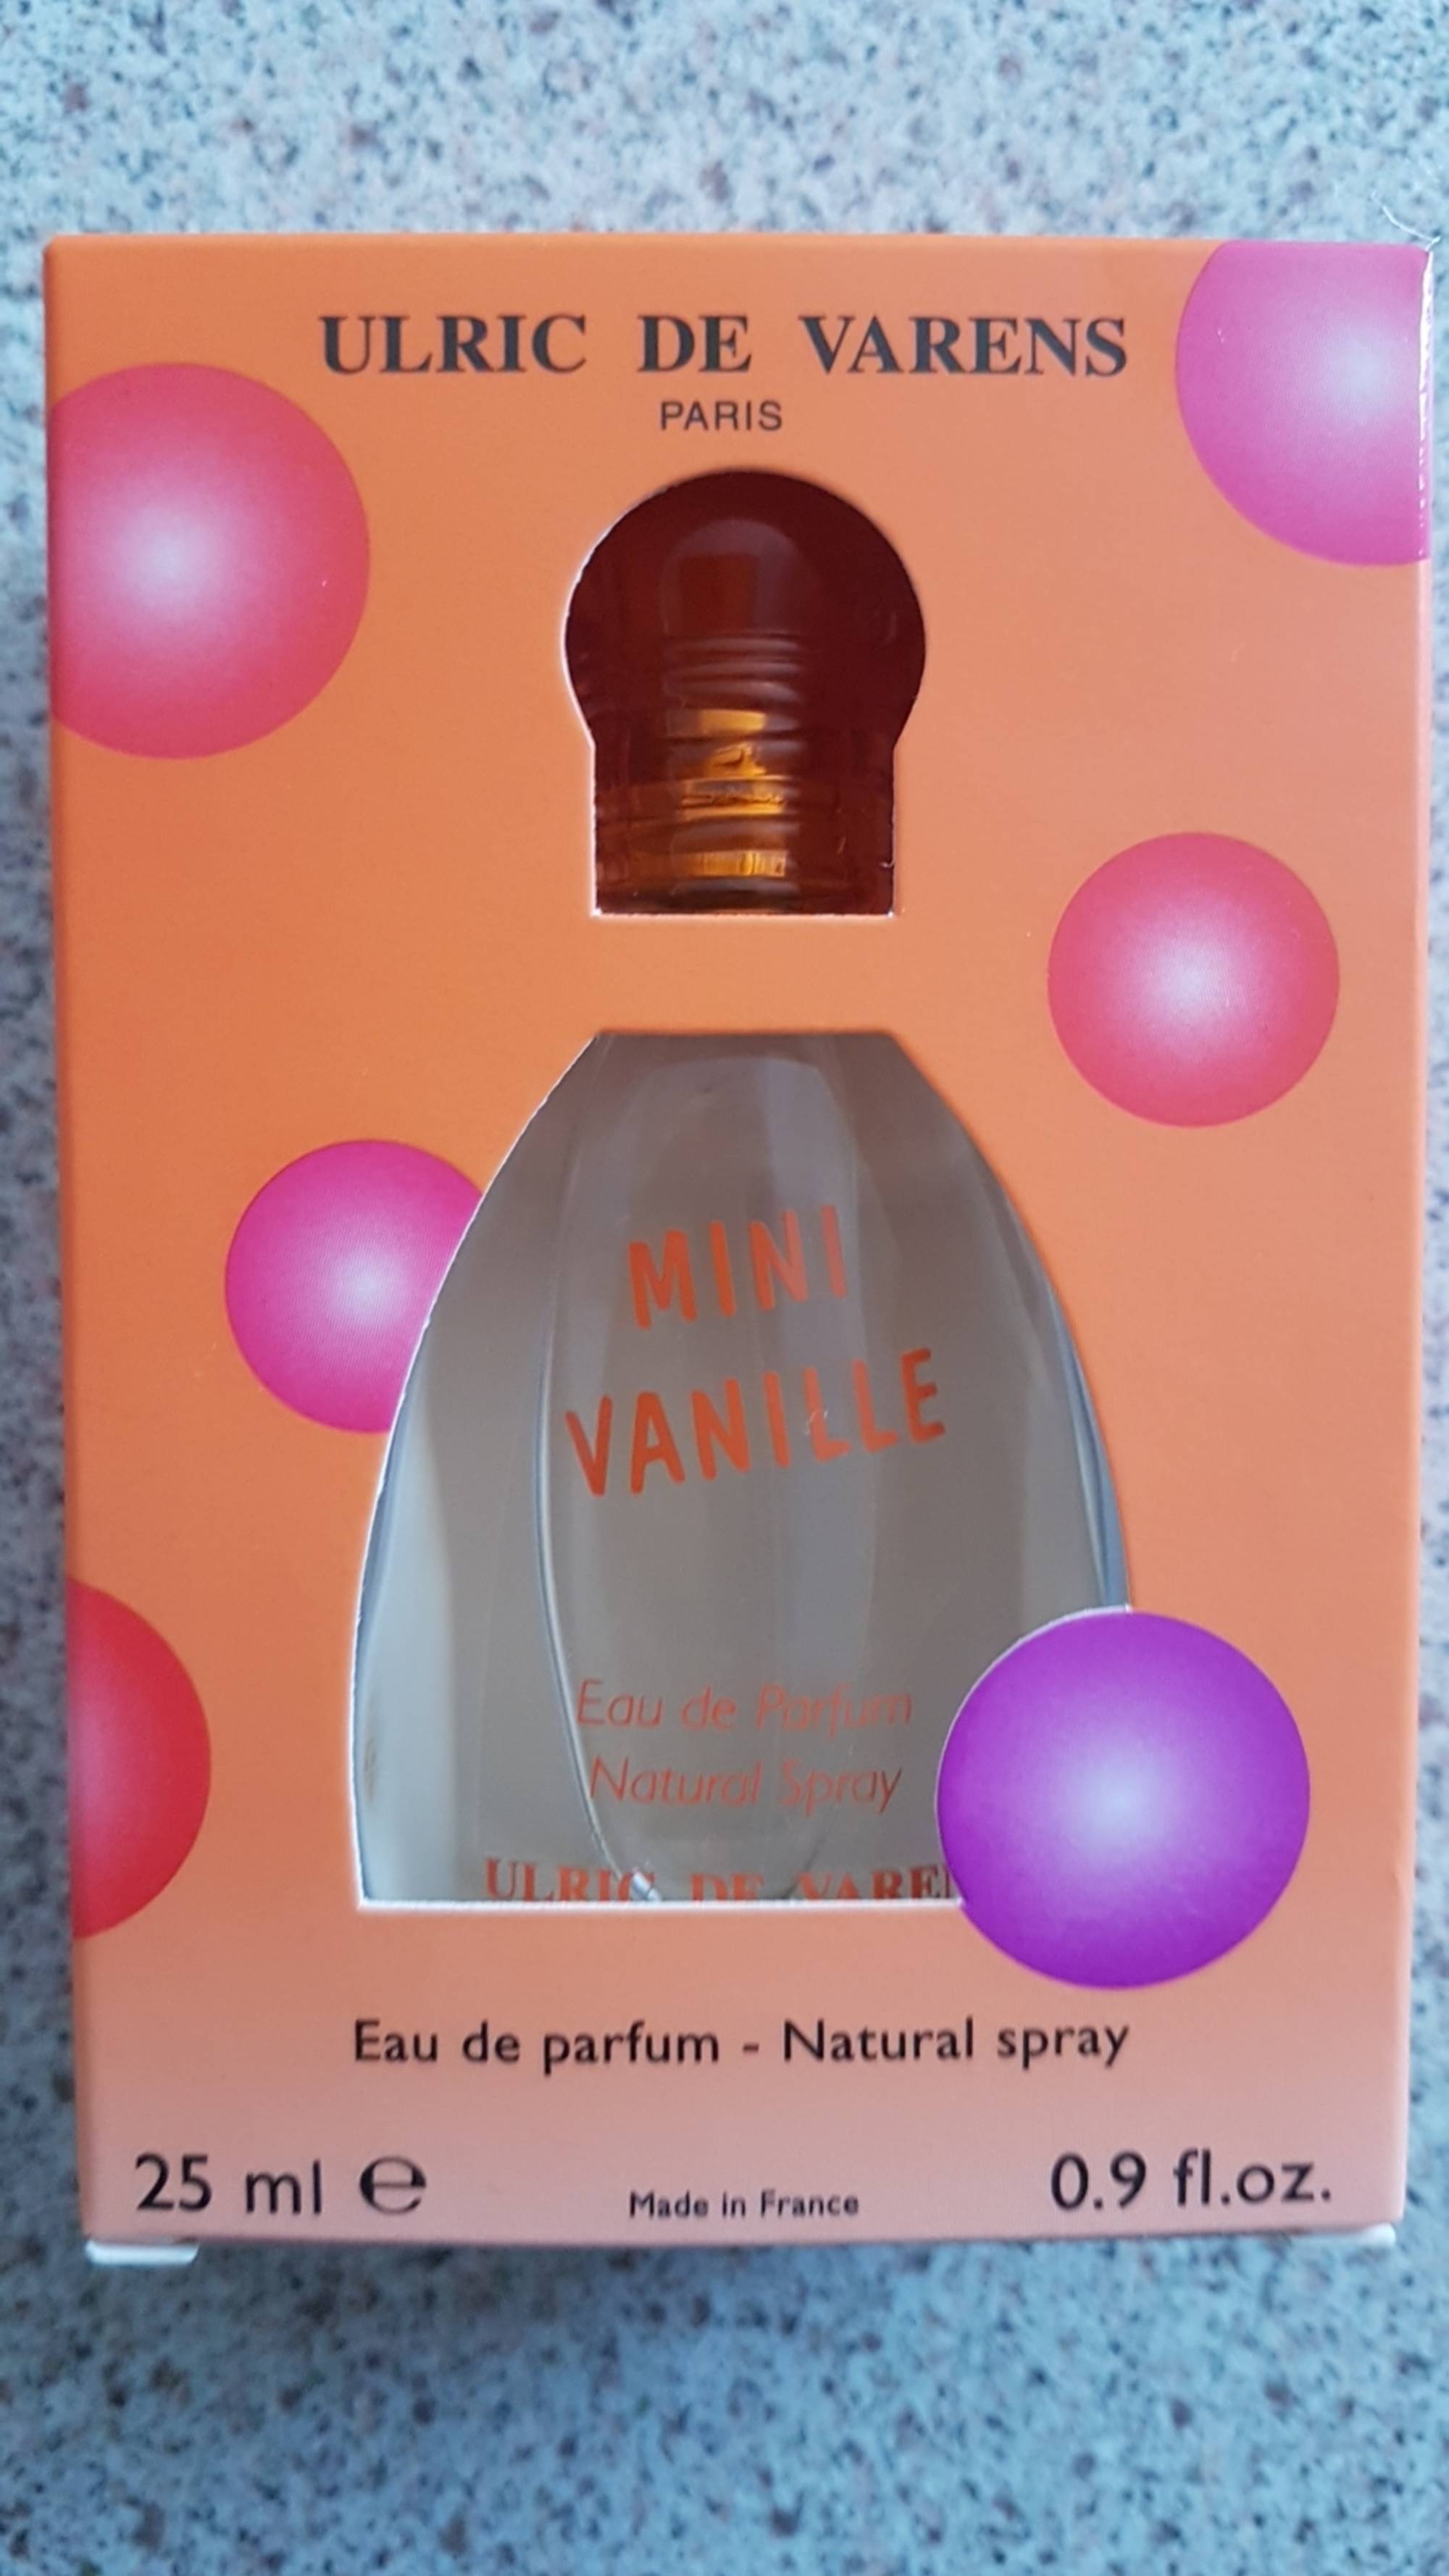 ULRIC DE VARENS - Mini vanille - Eau de parfum